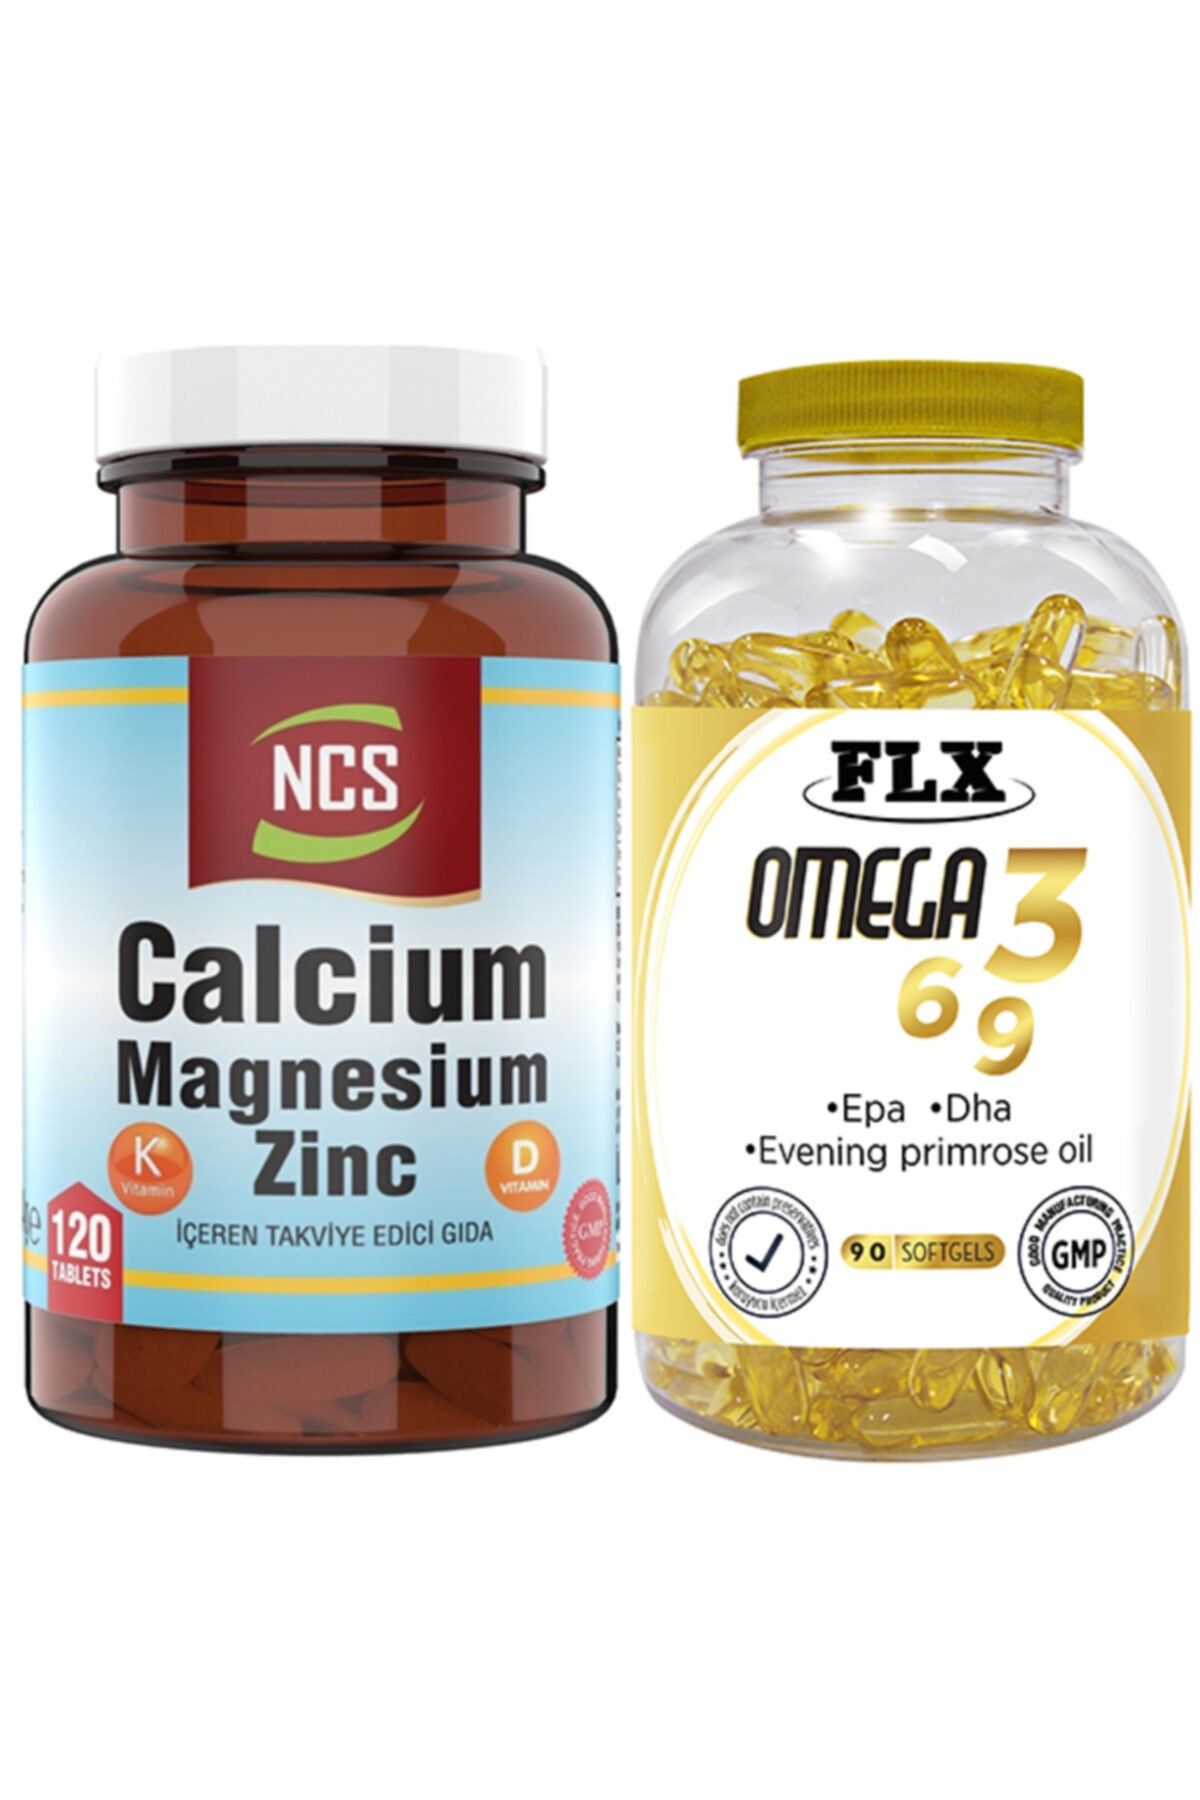 Ncs Kalsiyum Magnezyum Zinc D & K Vitamin 120 Tablet & Flx Omega 3-6-9 Balık Yağı 90 Tablet